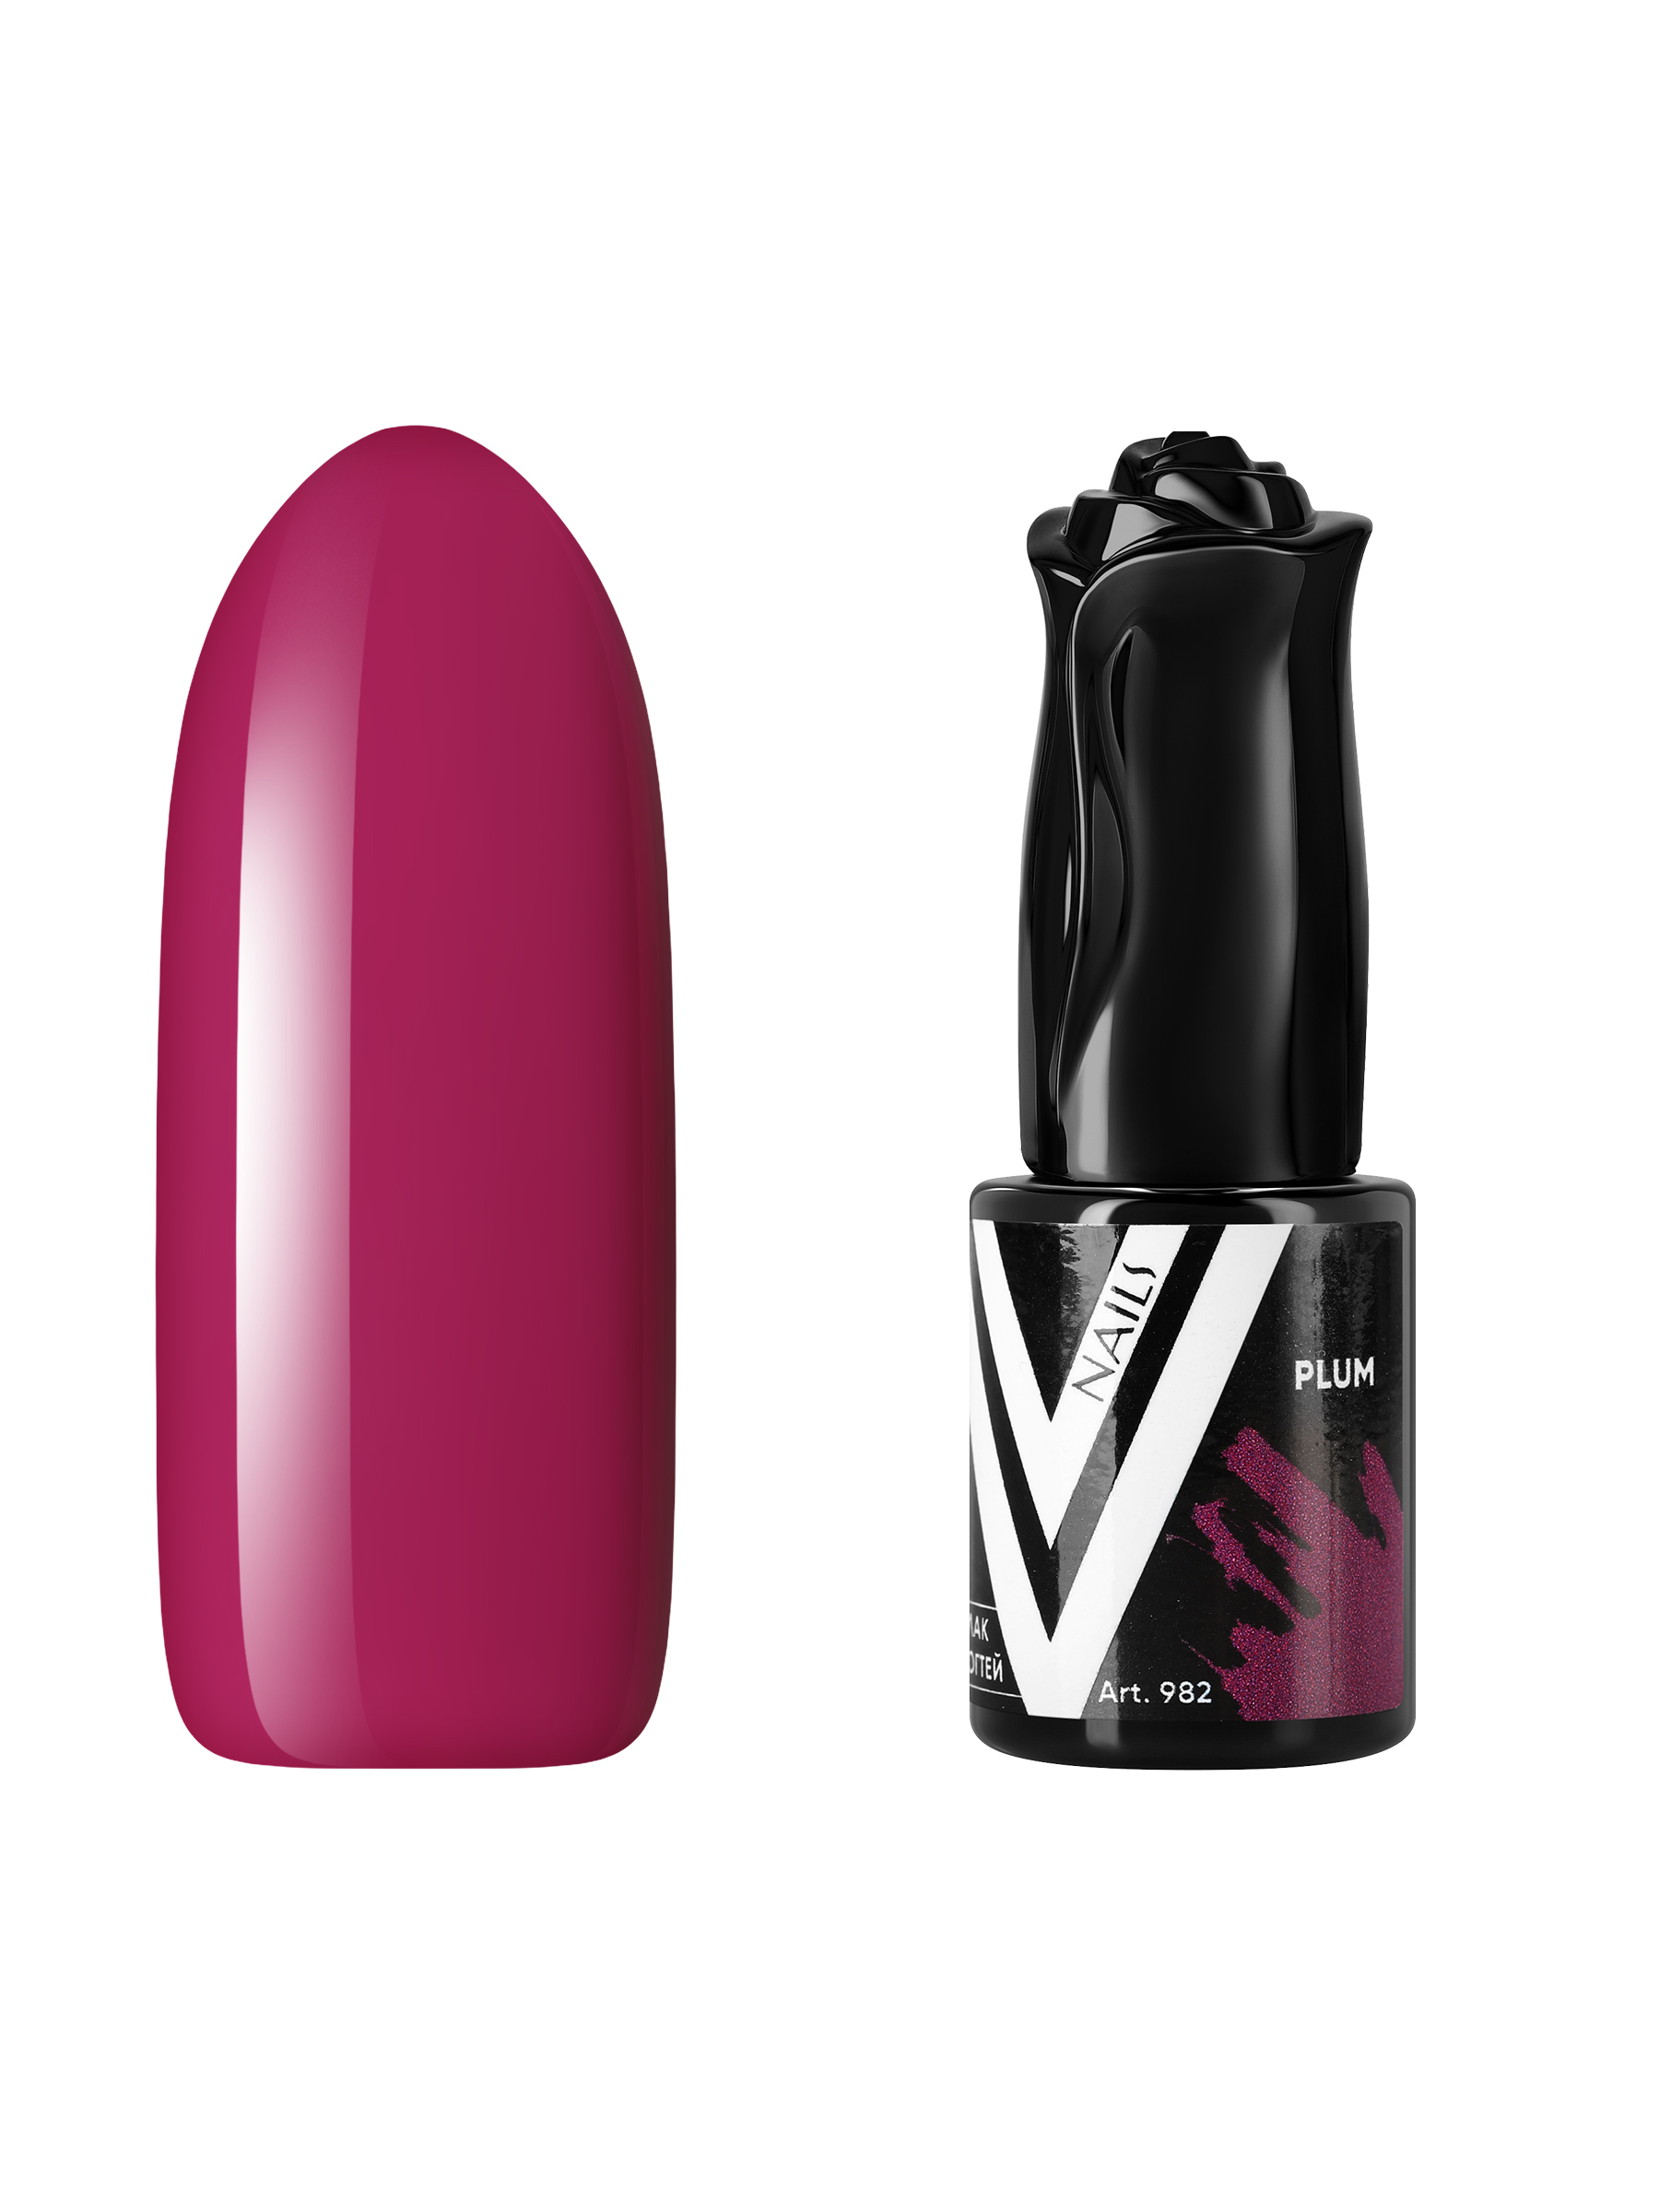 Гель-лак для ногтей Vogue Nails плотный самовыравнивающийся, фиолетовый розовый, 10 мл сложнотехническая открытка с днем рождения 15 фиолетовый розовый бирка 12 5х17 5см